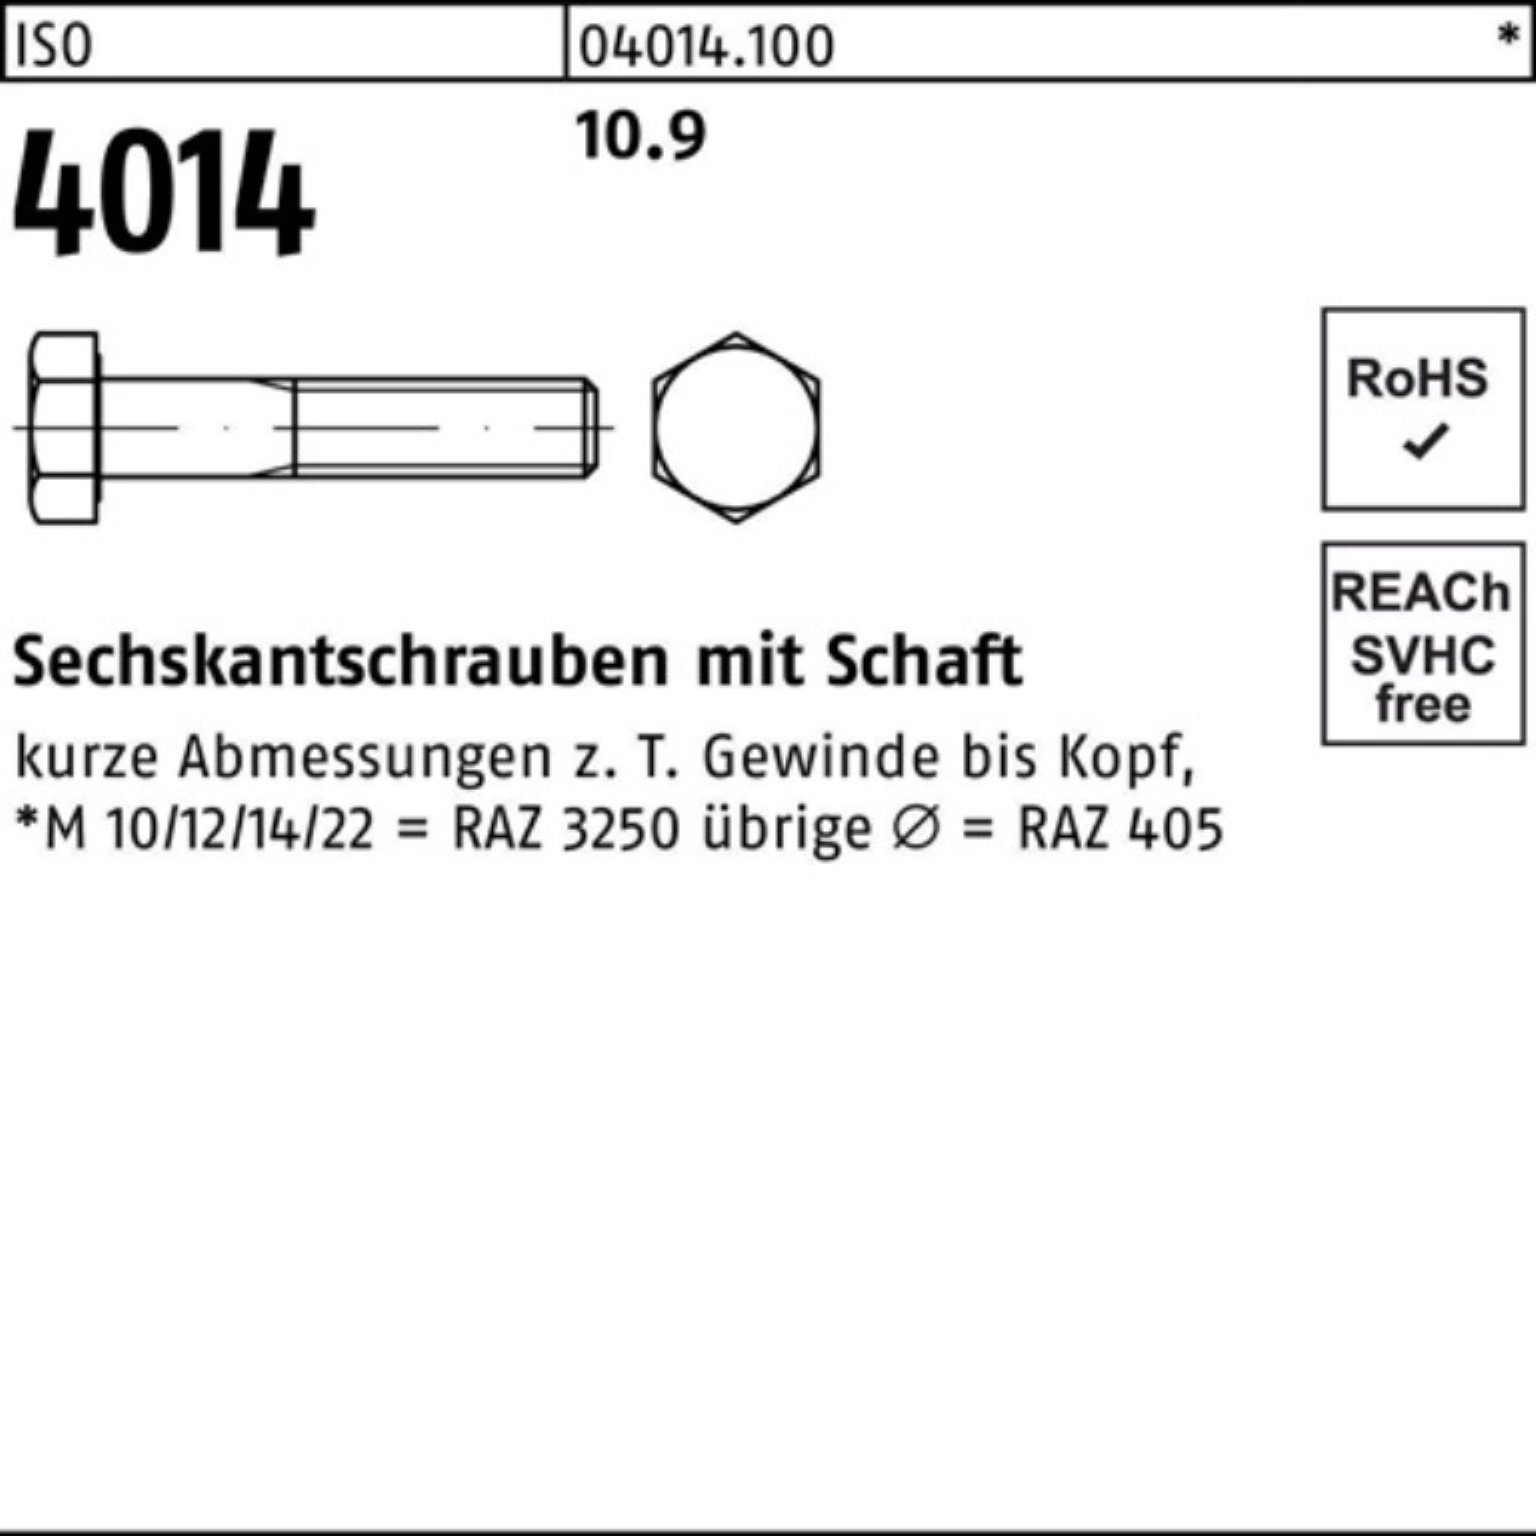 Pack 200 Sechskantschraube 100er 10.9 Bufab M45x IS Schaft Stück Sechskantschraube 4014 ISO 1